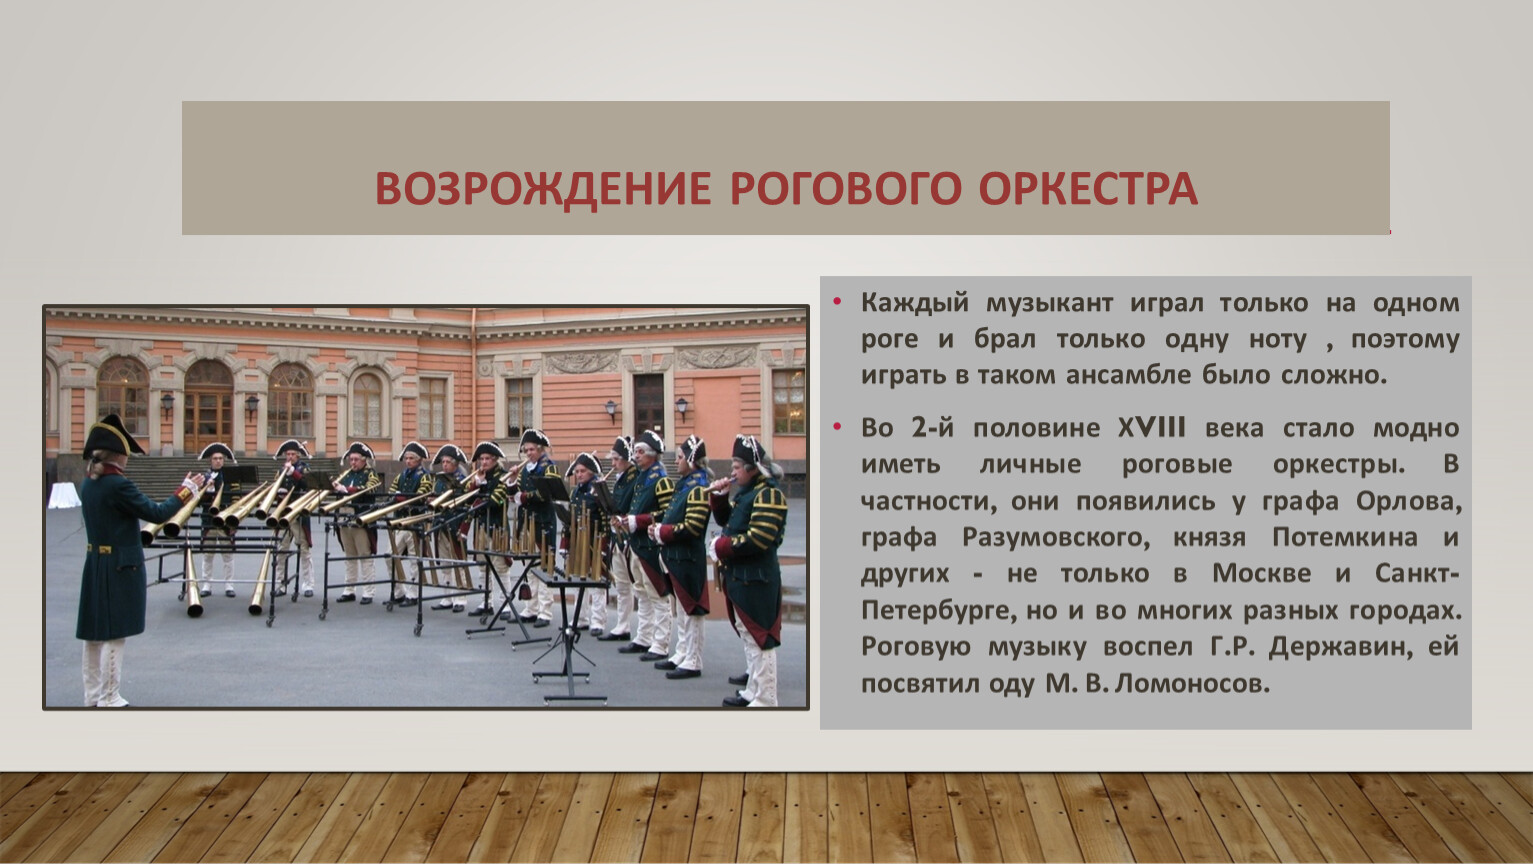 Роговой оркестр 18 века в России